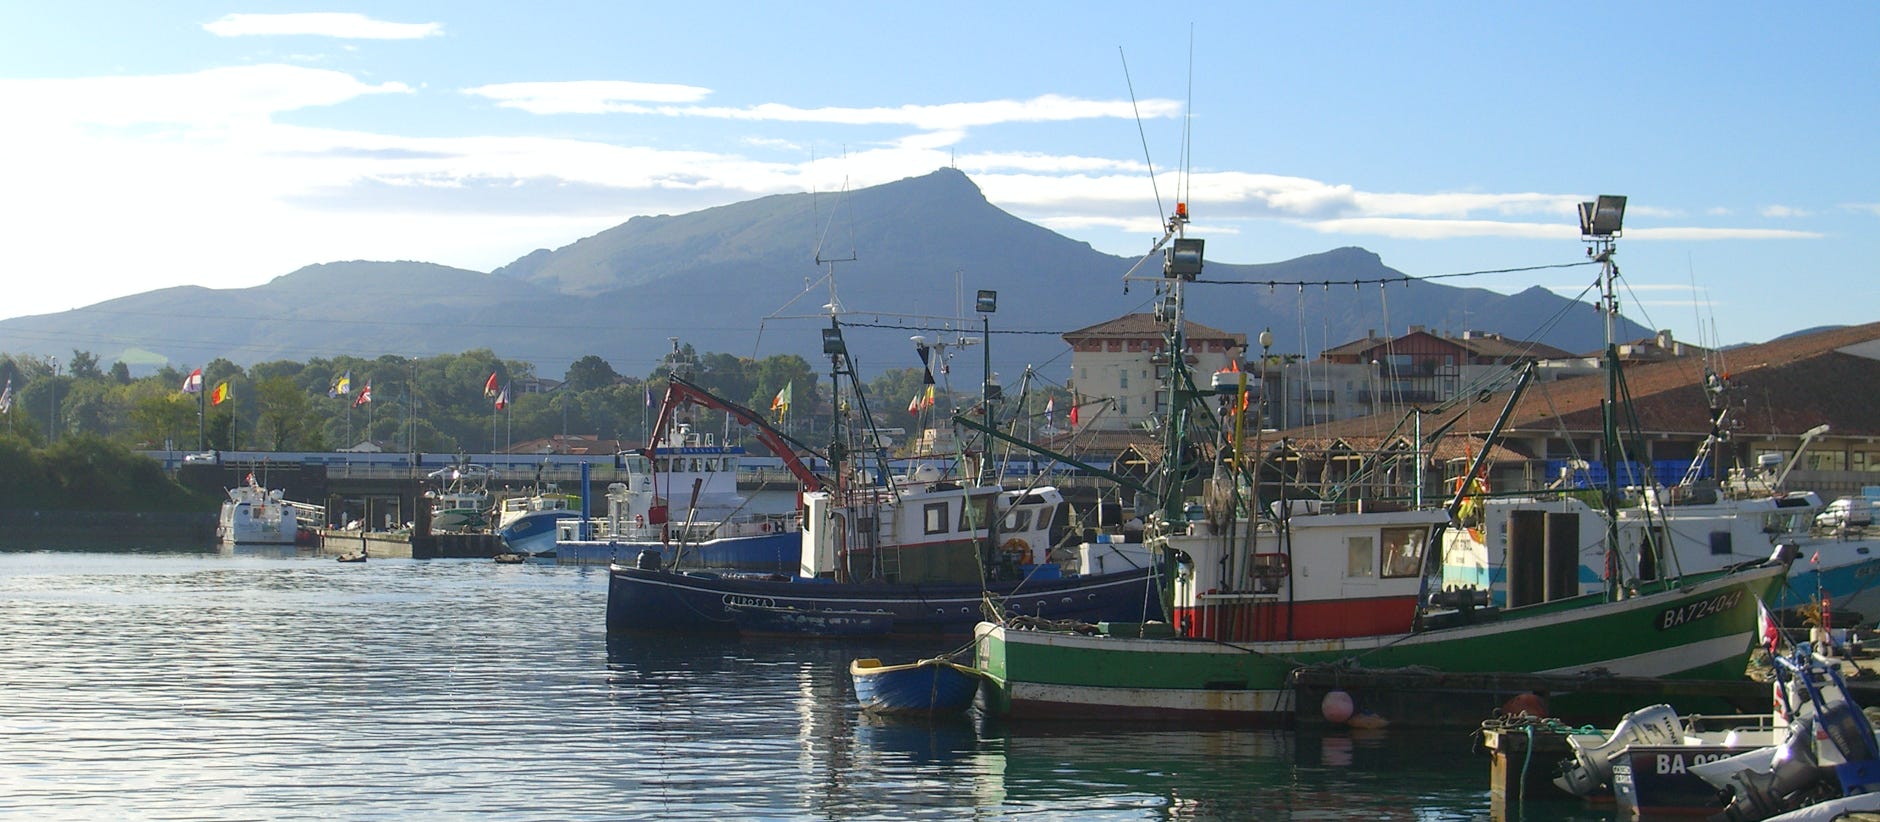 Port de pêche, St Jean de Luz